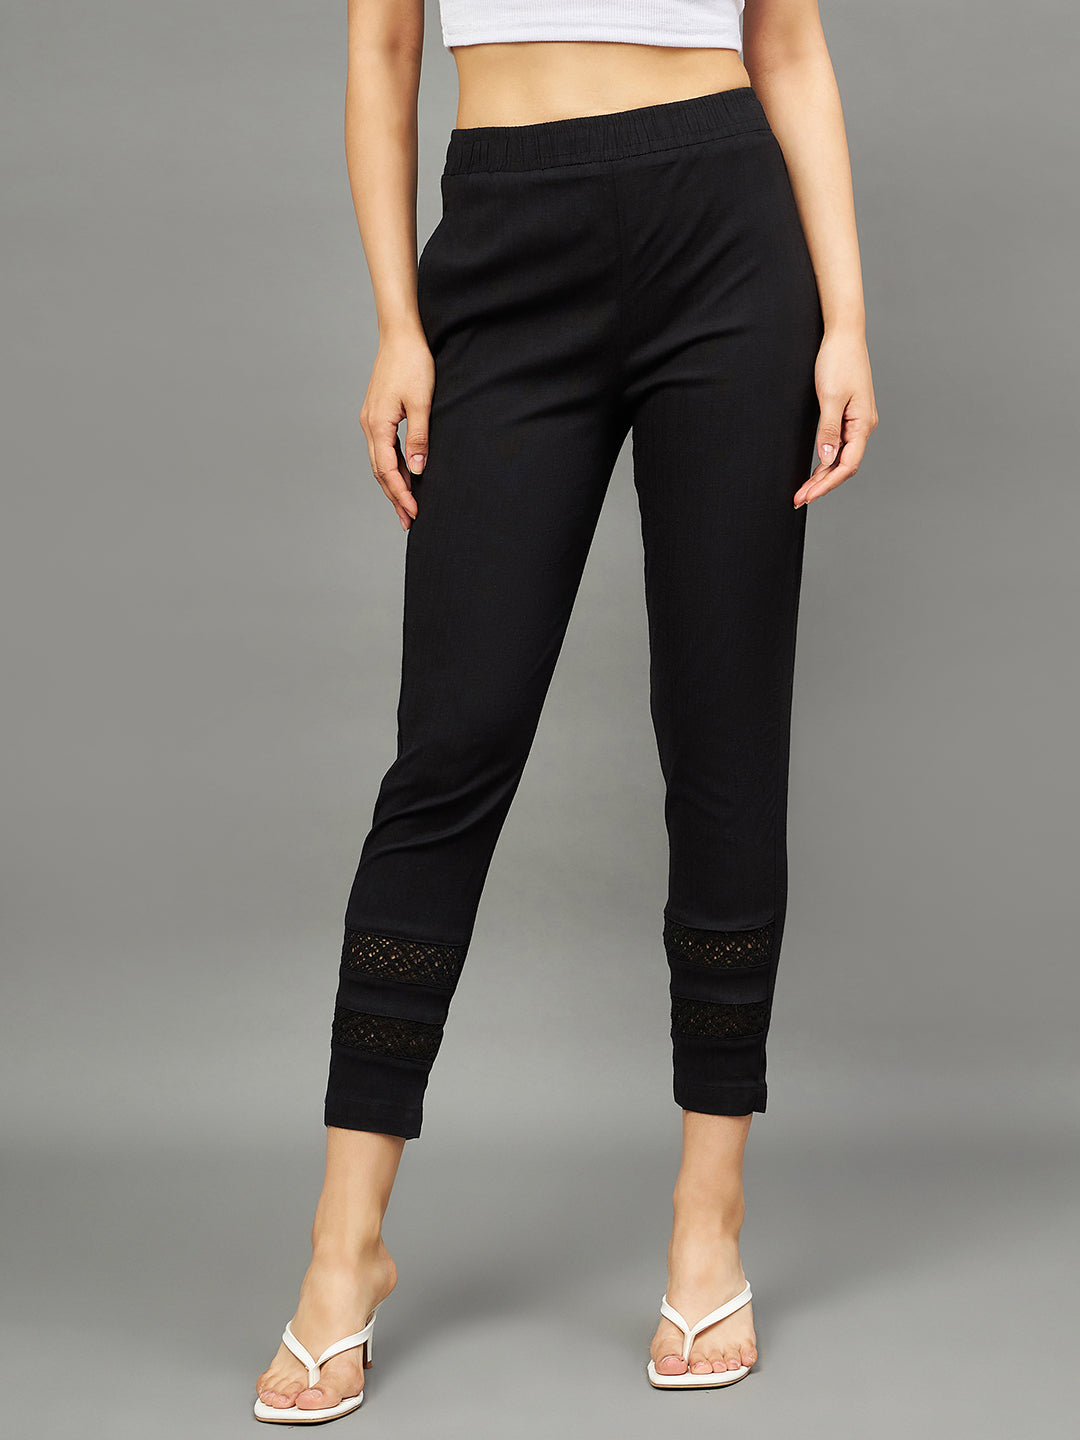 Black Colour Double Lace Pants – The Pajama Factory